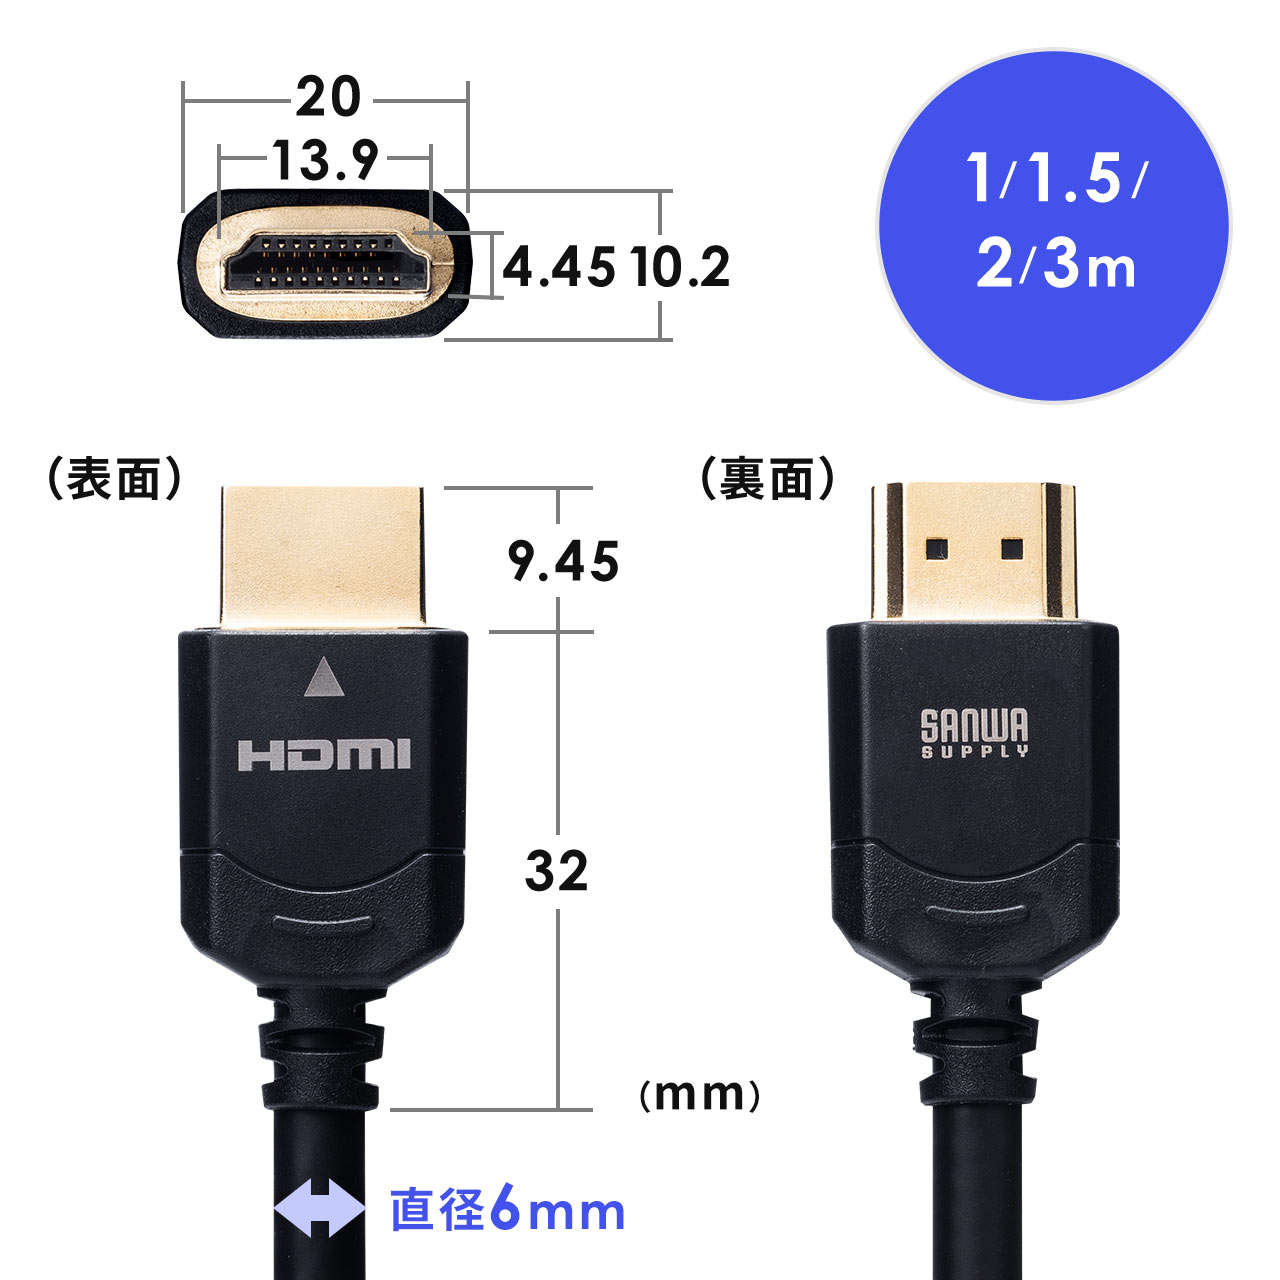 HDMIP[ui8KΉEUltraHD 8K HDMI P[uE48GbpsΉE1mE4K/120HzEPS5Ήj 500-HD024-10